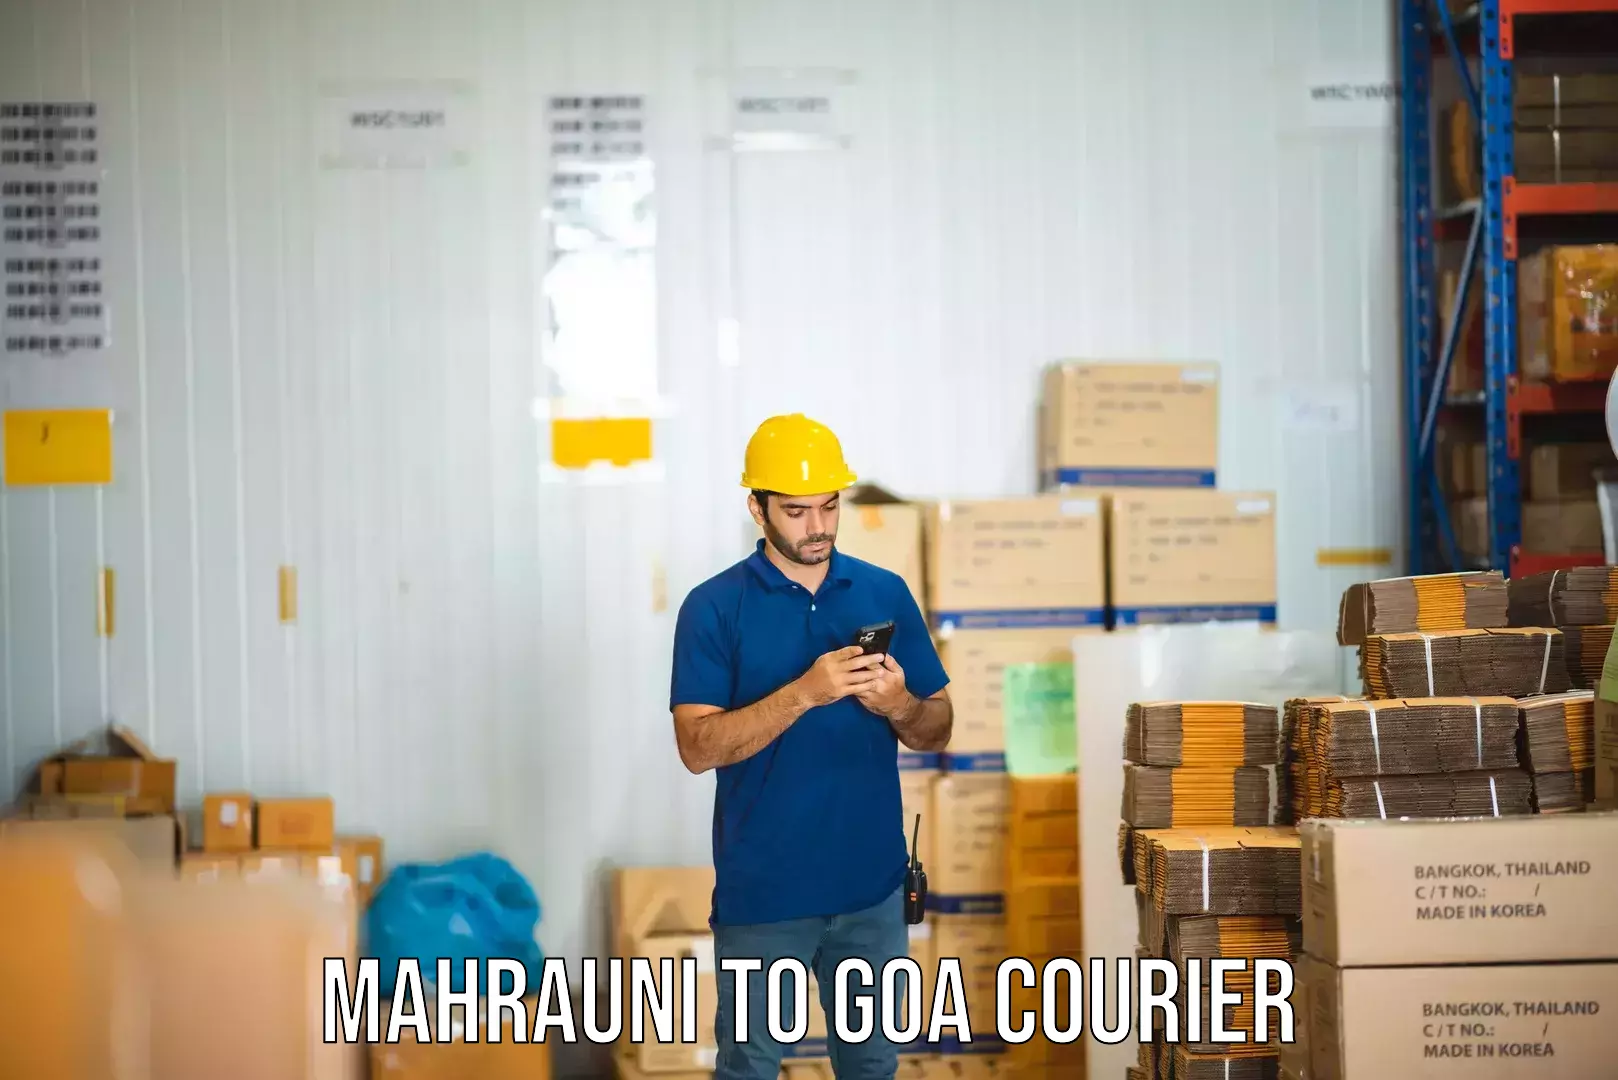 Courier service innovation Mahrauni to Panaji